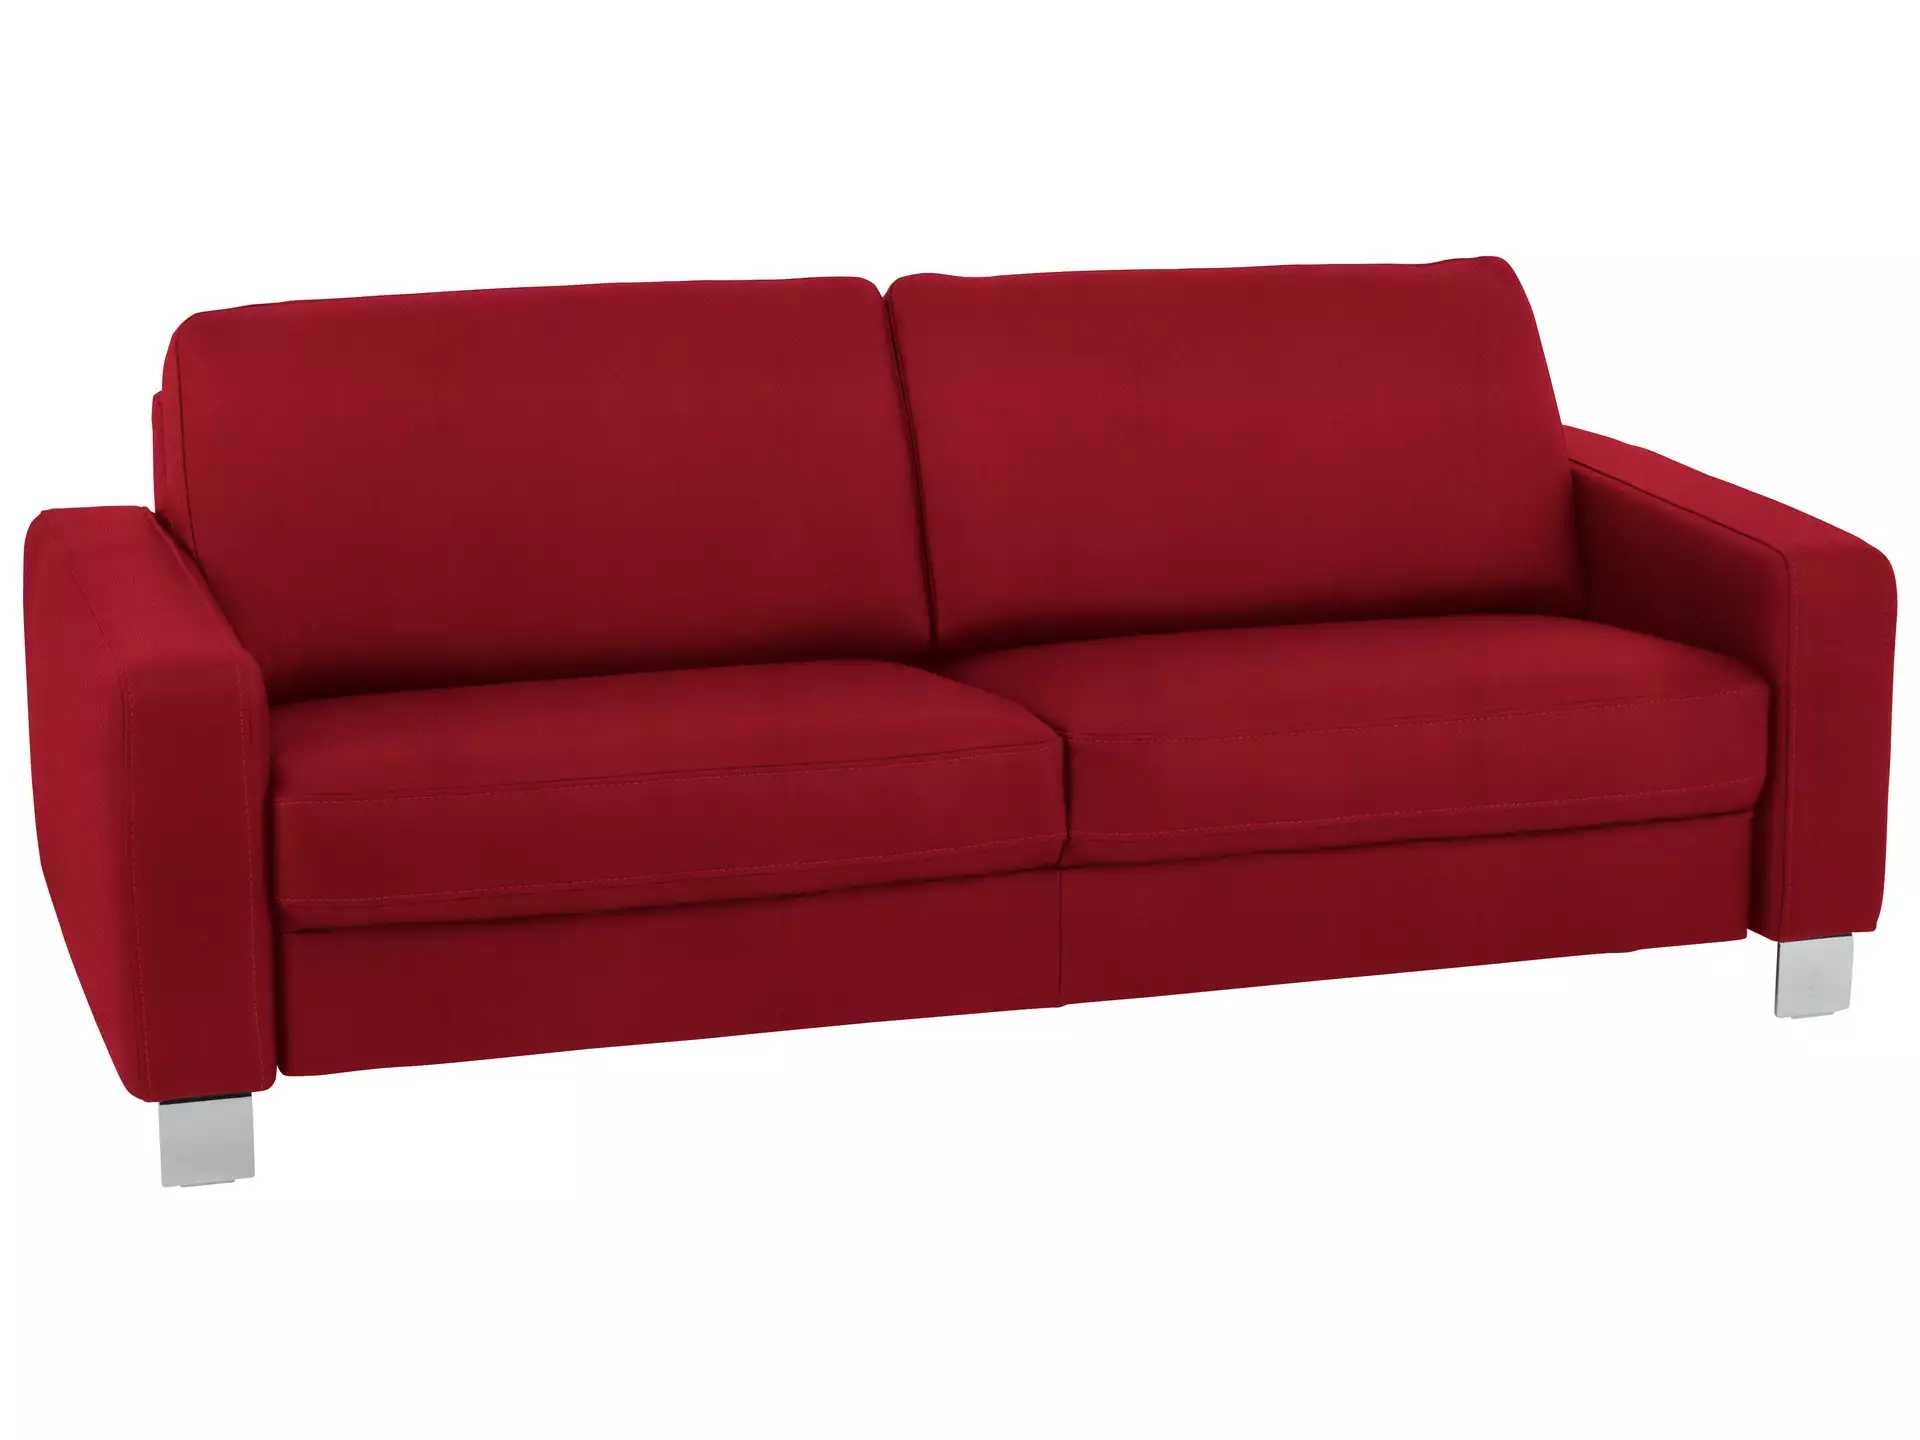 Sofa Shetland Basic B: 214 cm Polipol / Farbe: Rosso / Material: Leder Basic